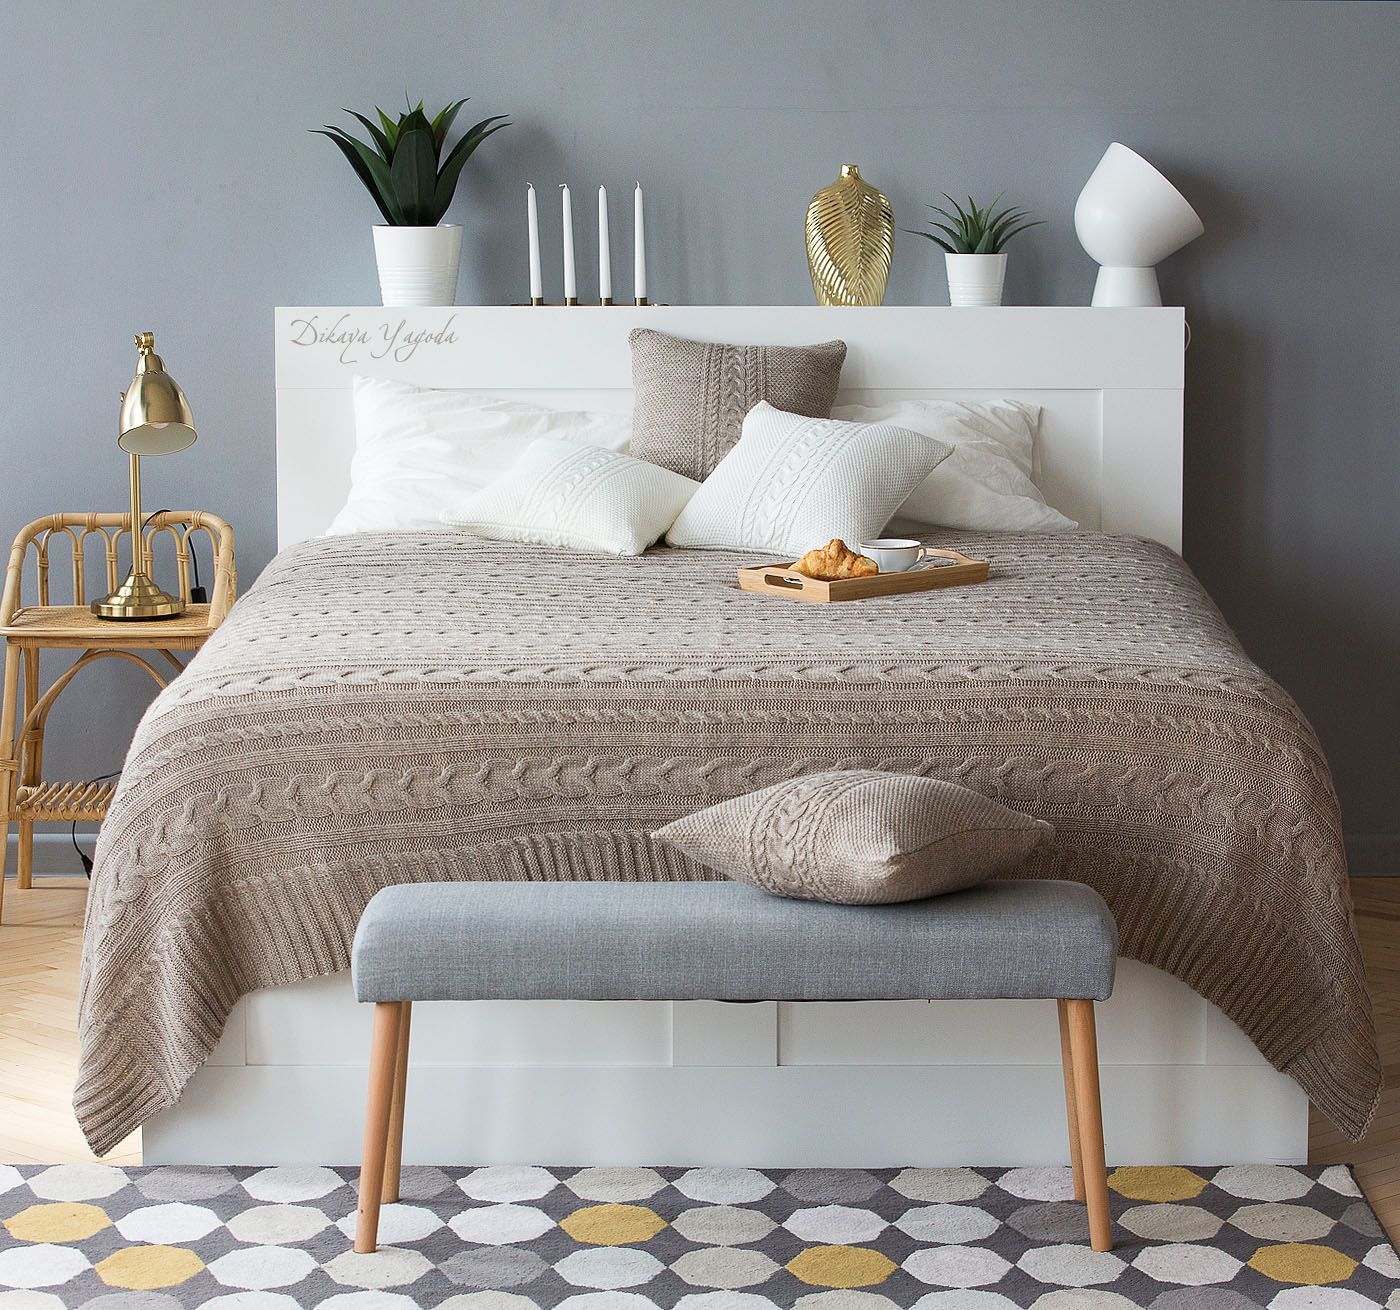 Как красиво заправить кровать: правила профессионалов